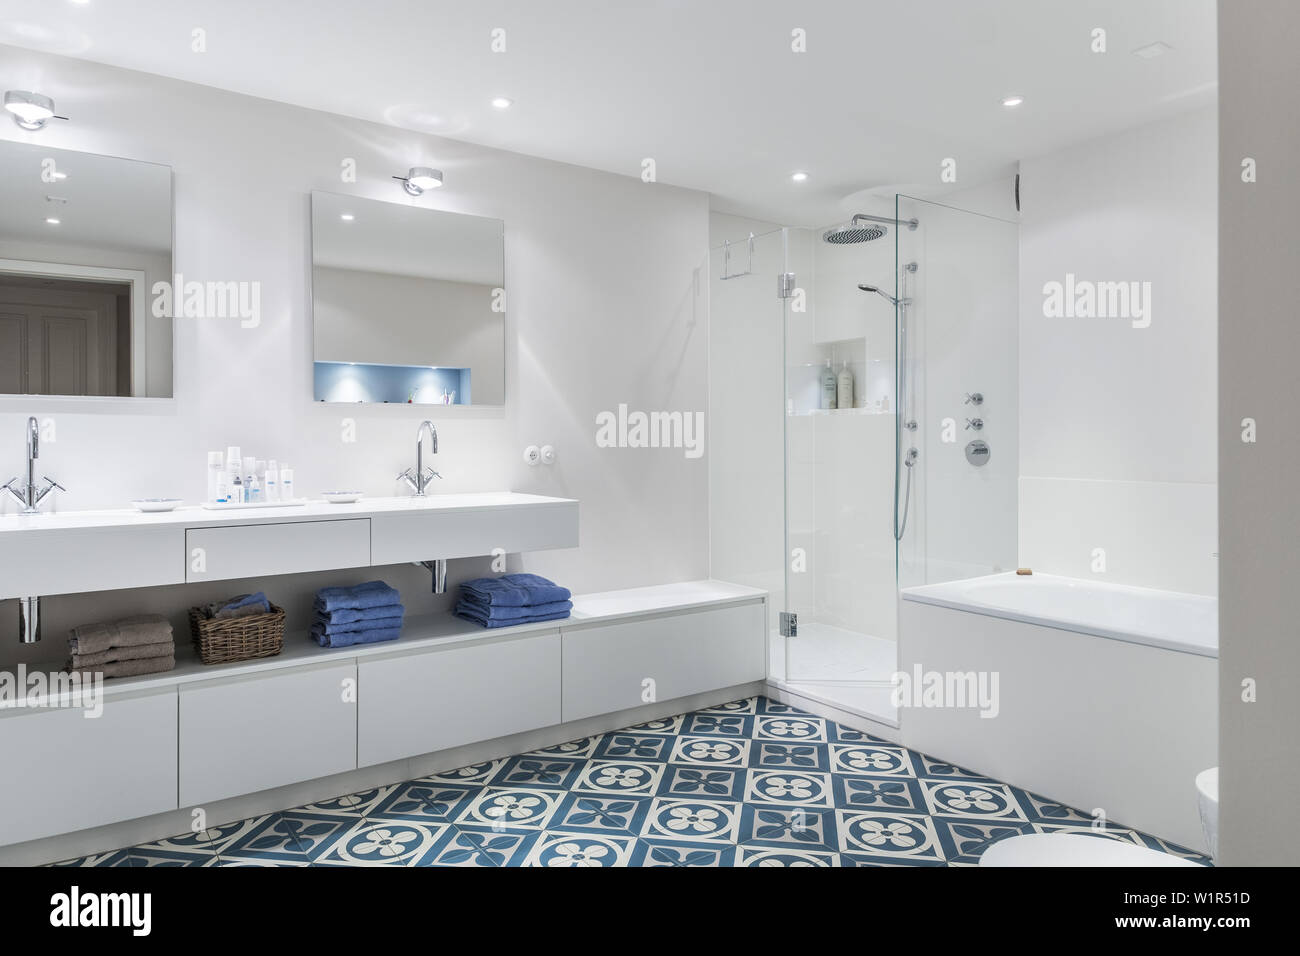 Badezimmer in einem modern eingerichteten Jugendstil Wohnung in  Hamburg,Deutschland, Europa Stockfotografie - Alamy